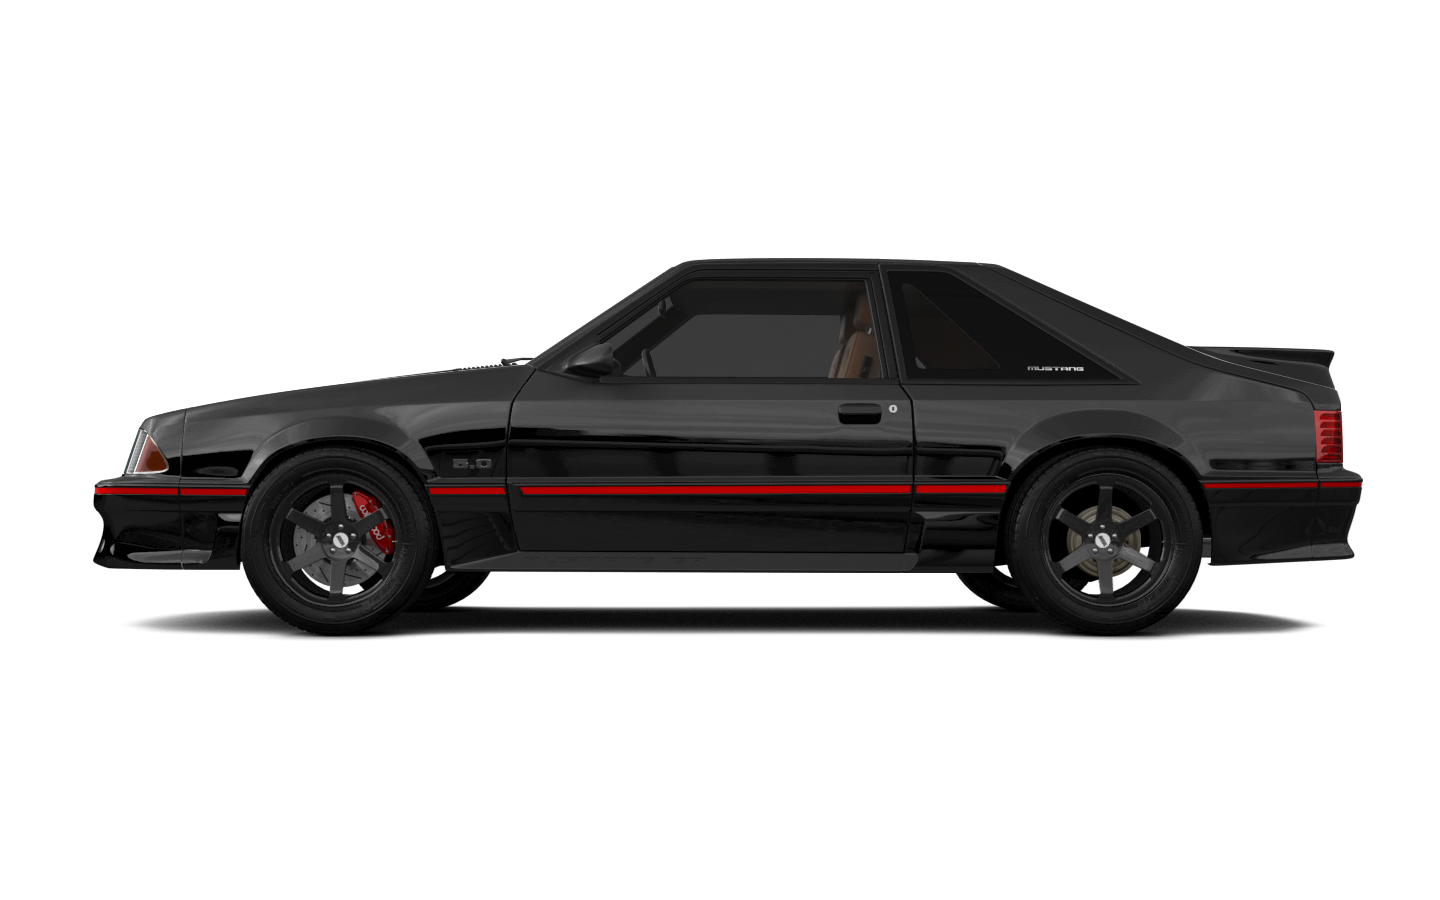 Ford Mustang 3 Door Hatchback 1988 tuning